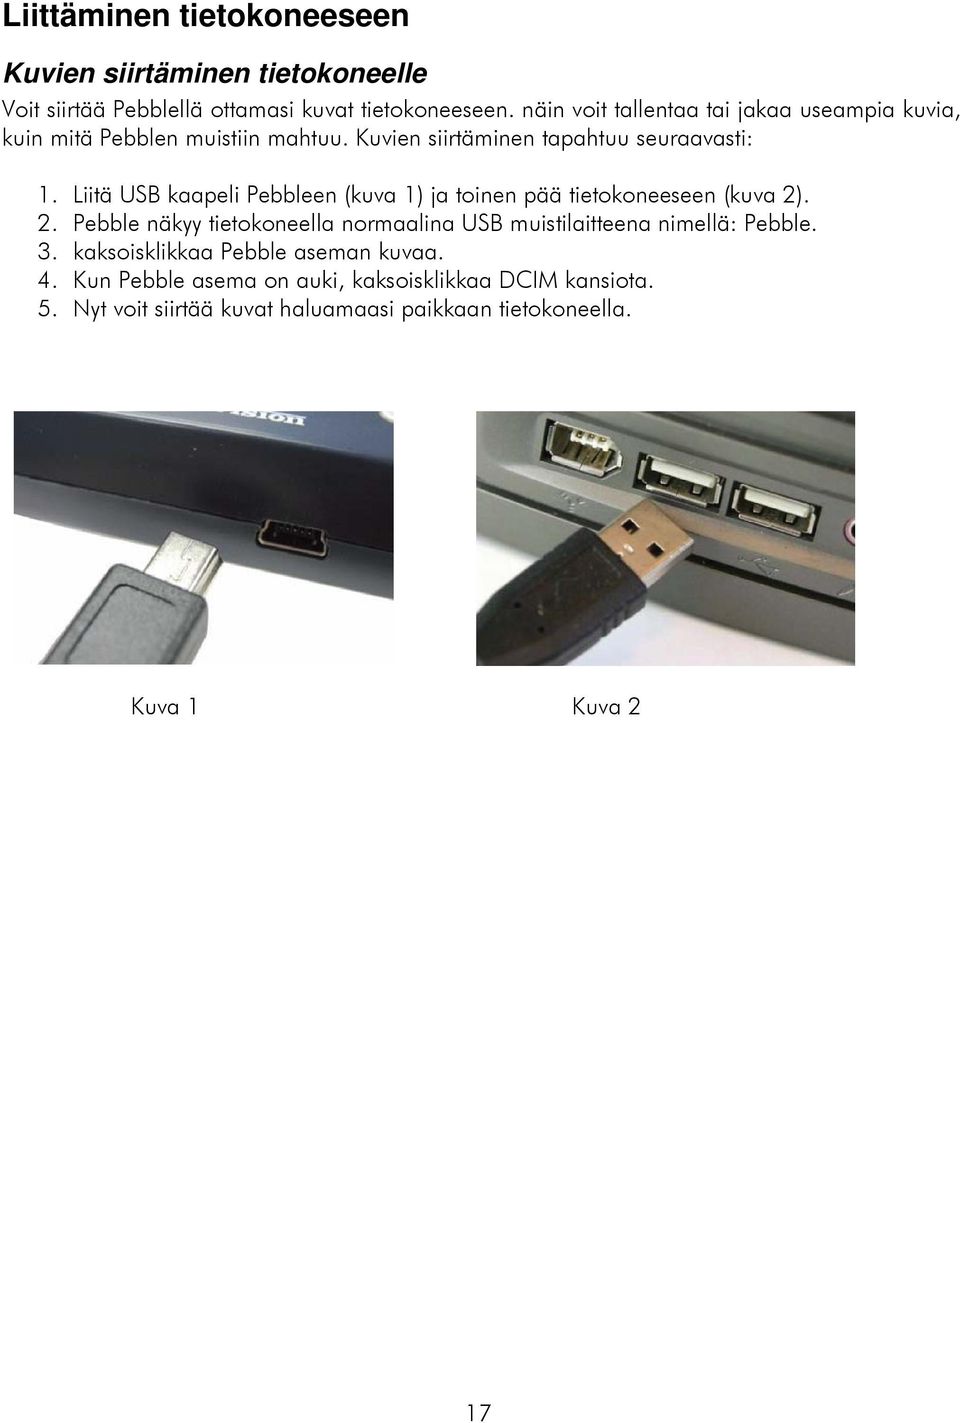 Liitä USB kaapeli Pebbleen (kuva 1) ja toinen pää tietokoneeseen (kuva 2)